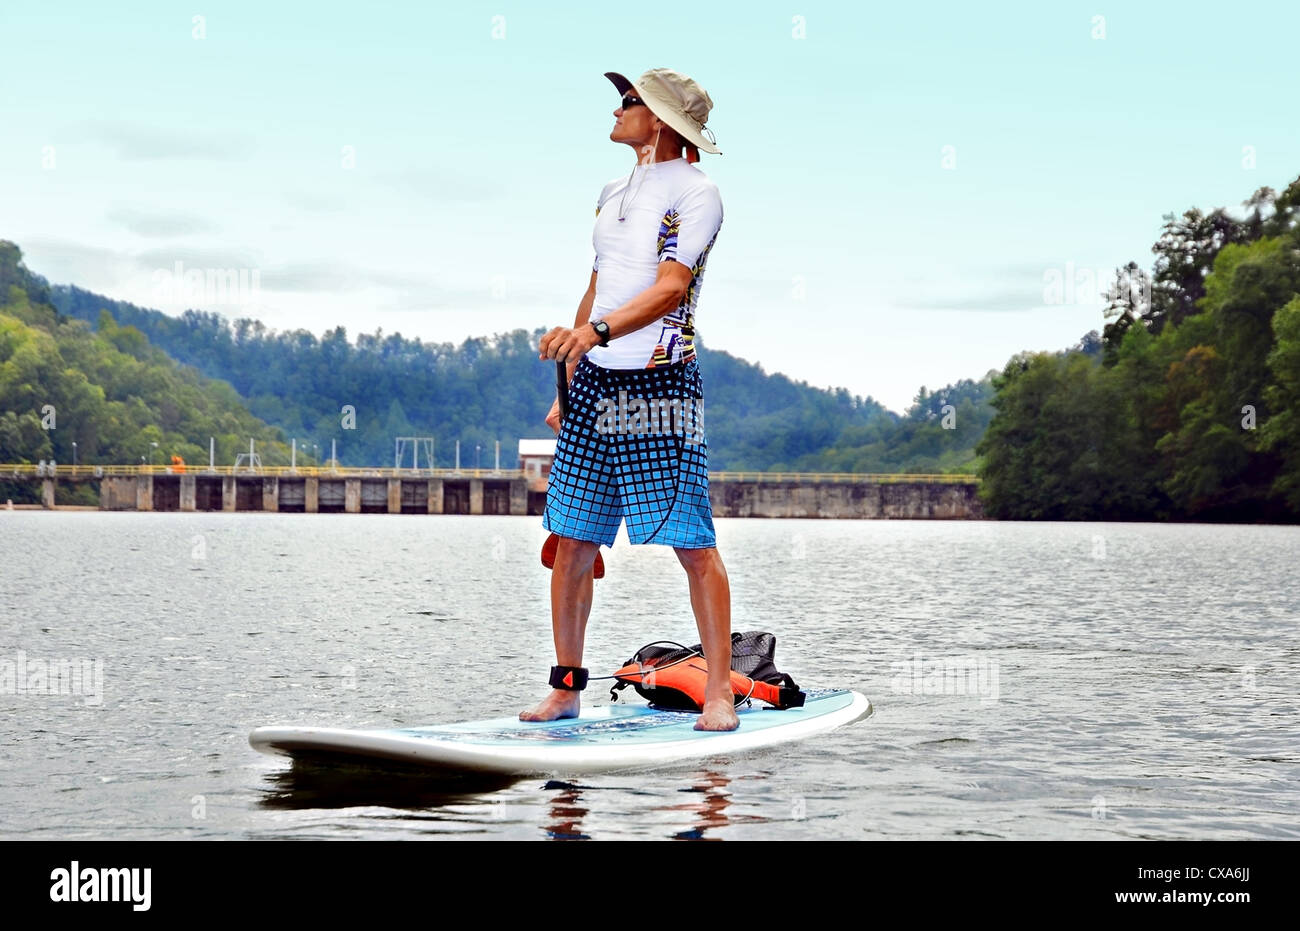 Ein Mann auf einem Paddle Board auf dem Damm des Sees. Stockfoto